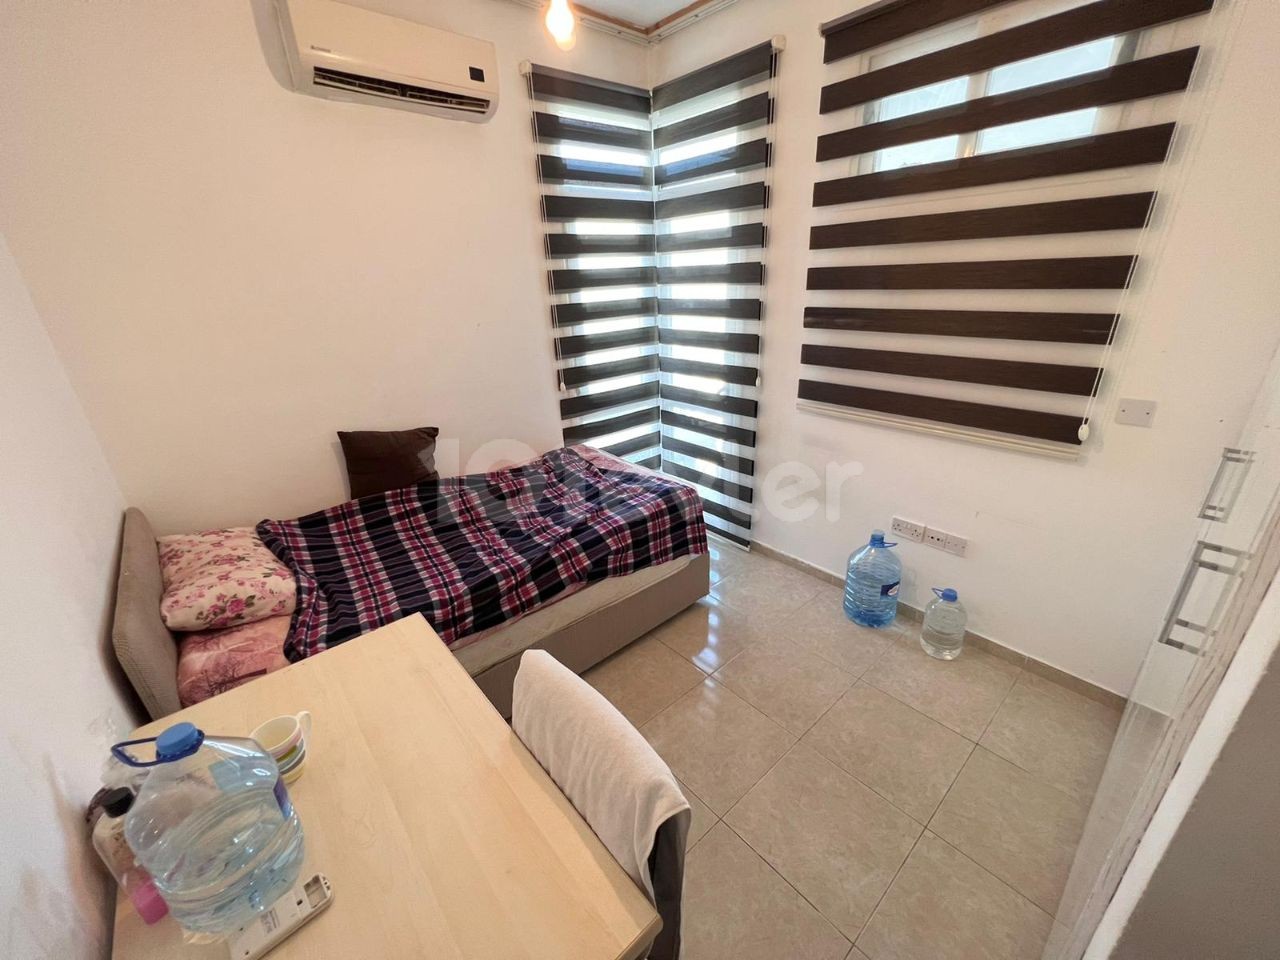 Lefkoşa Ortaköy Bölgesinde Devlet Hastanesine Yakın Konumda, Yatırıma Uygun Satılık 3 Yatak Odalı Apartman Dairesi